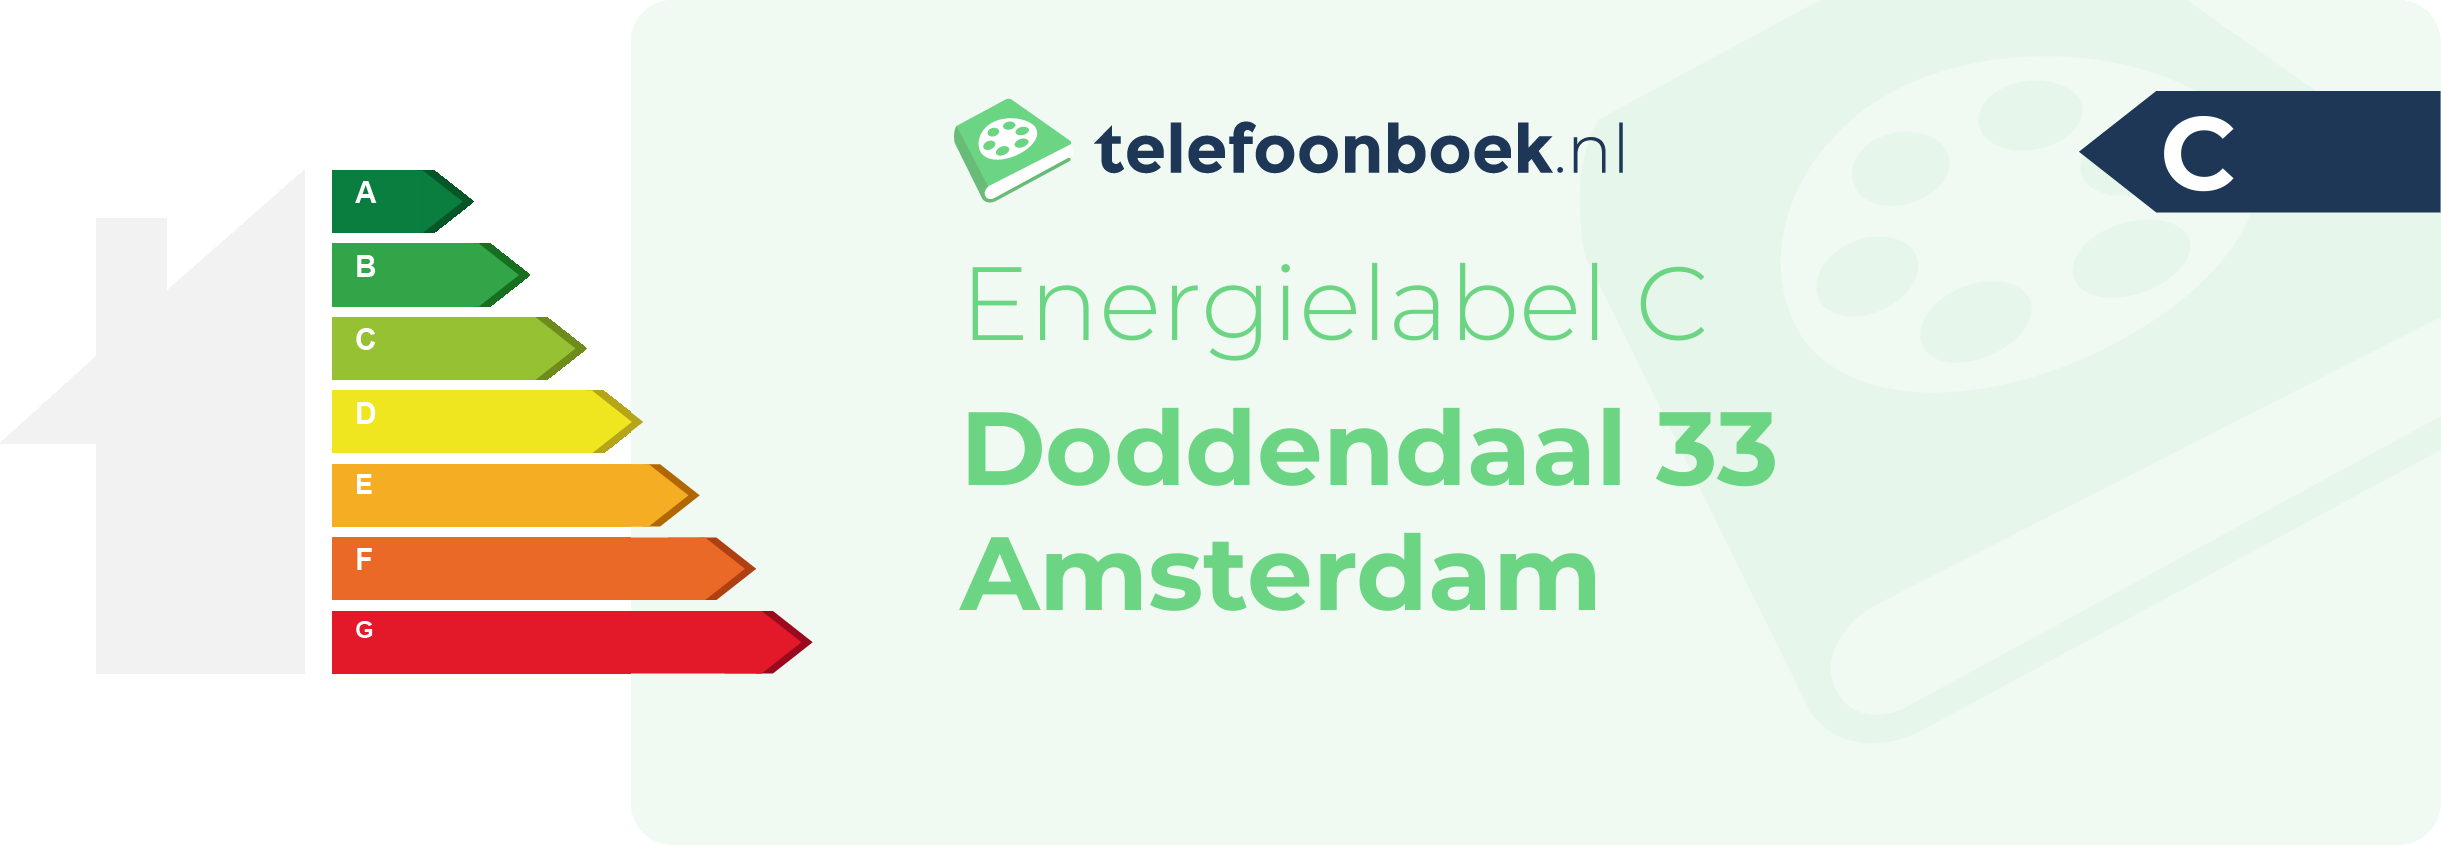 Energielabel Doddendaal 33 Amsterdam